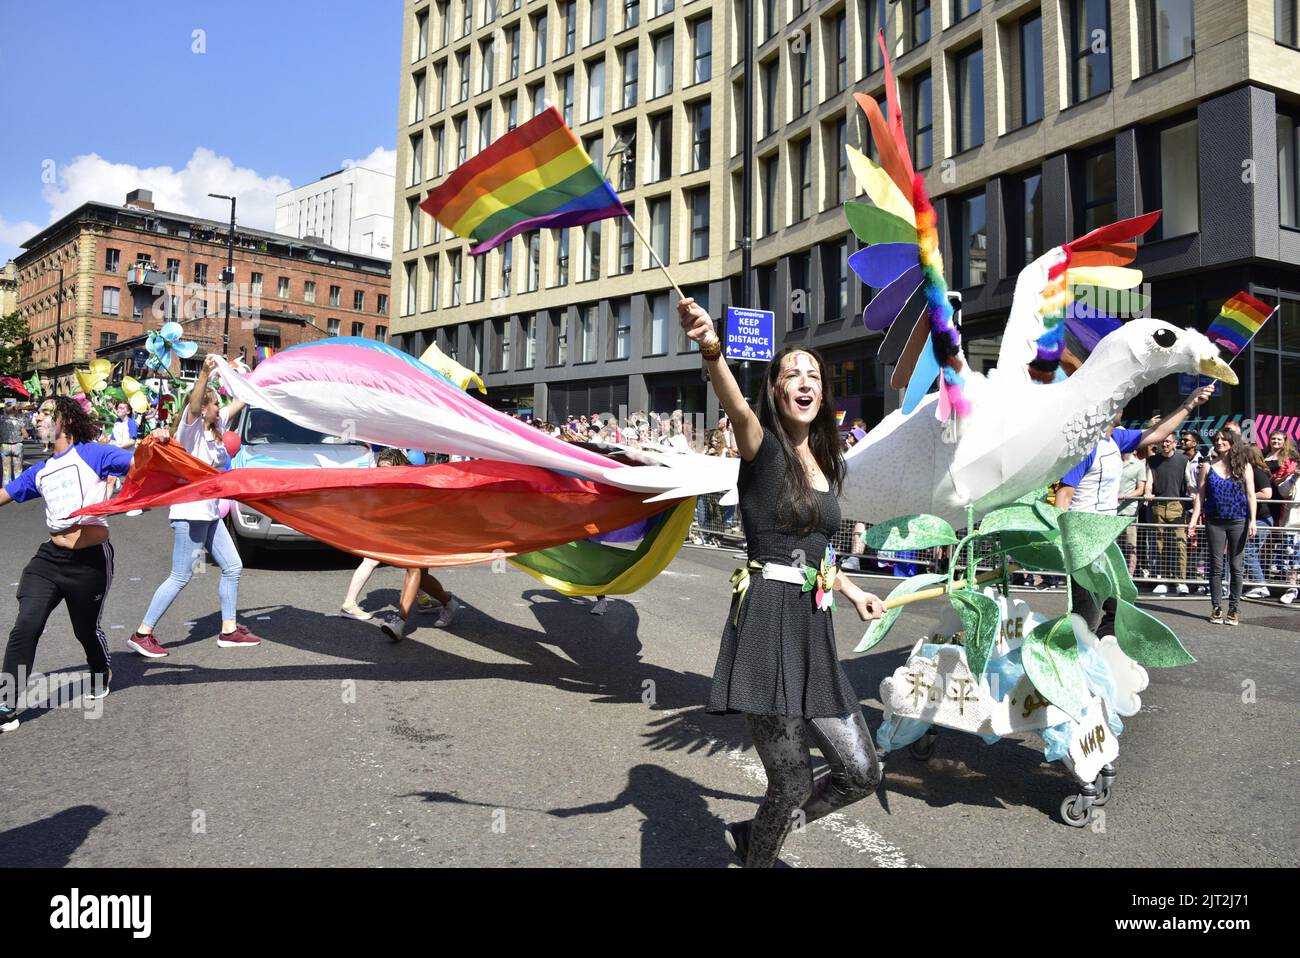 Manchester, Reino Unido. 27th de agosto de 2022. Un flotador de paz con arcoiris y banderas trans conduce el desfile. Los participantes participan en el desfile LGBTQ+ Pride Parade, en el centro de Manchester, Reino Unido, mientras LGBTQ+ Pride continúa durante el fin de semana festivo del 26th al 29th de agosto. Los organizadores dicen: 'Manchester Pride es una de las principales organizaciones benéficas LGBTQ+ del Reino Unido. Nuestra visión es un mundo donde las personas LGBTQ+ son libres de vivir y amar sin prejuicio. Somos parte de un movimiento mundial del Orgullo que celebra la igualdad LGBTQ+ y desafía la discriminación.' Crédito: Terry Waller/Alamy Live News Foto de stock